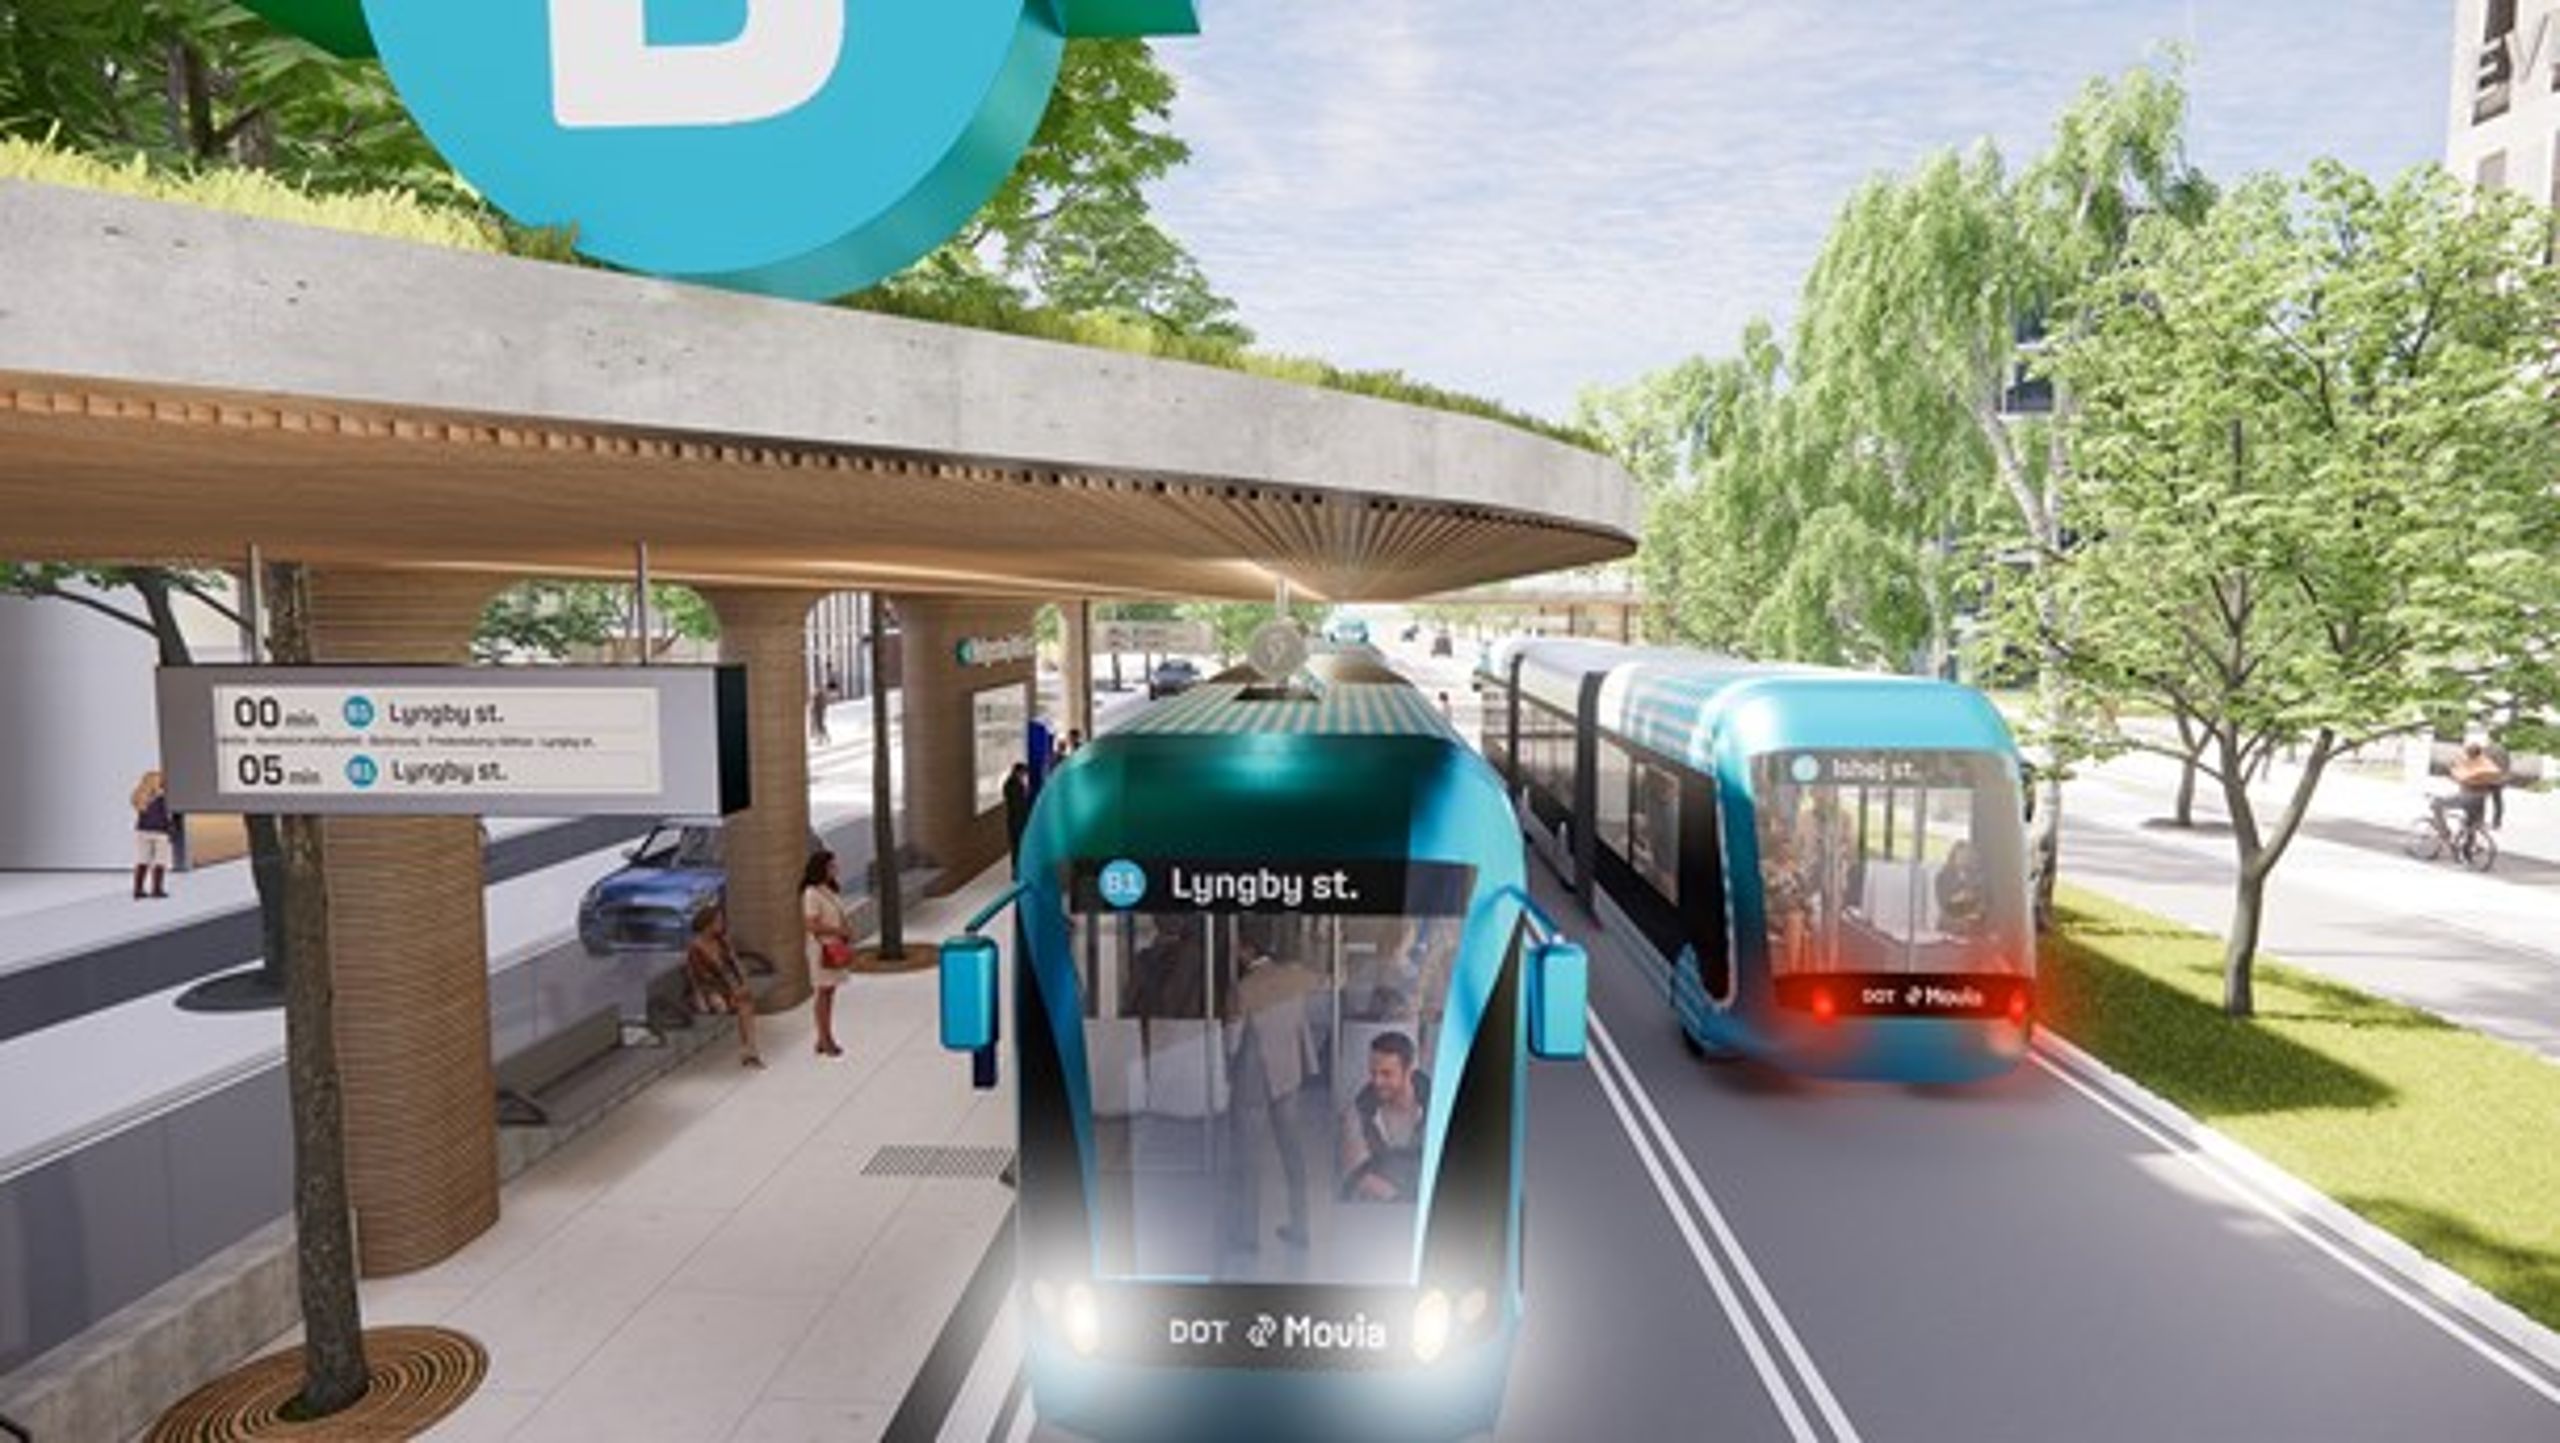 BRT-linjerne kører på el og er et attraktivt tilbud om effektiv kollektiv transport med op til 12 afgange i timen, skriver formænd for de regionale trafikselskaber Midttrafik, Nordjyllands Trafikselskab (NT) og Movia.